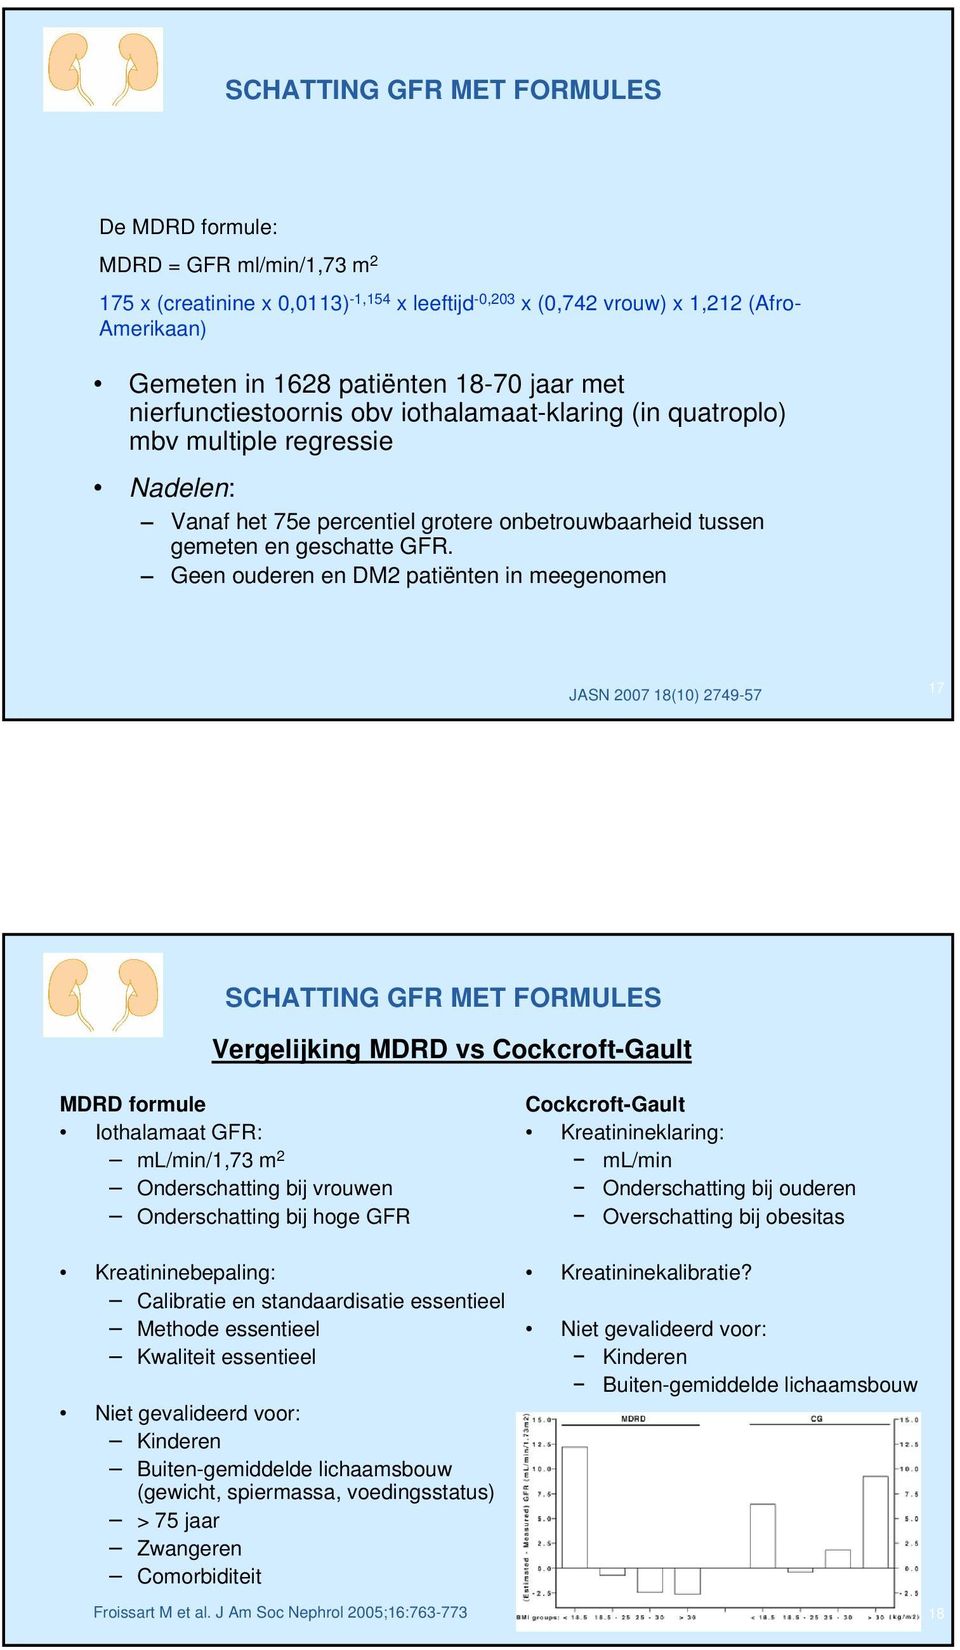 Geen ouderen en DM patiënten in meegenomen JASN 007 18(10) 749-57 17 Vergelijking MDRD vs Cockcroft-Gault MDRD formule Iothalamaat GFR: ml/min/1,73 m Onderschatting bij vrouwen Onderschatting bij